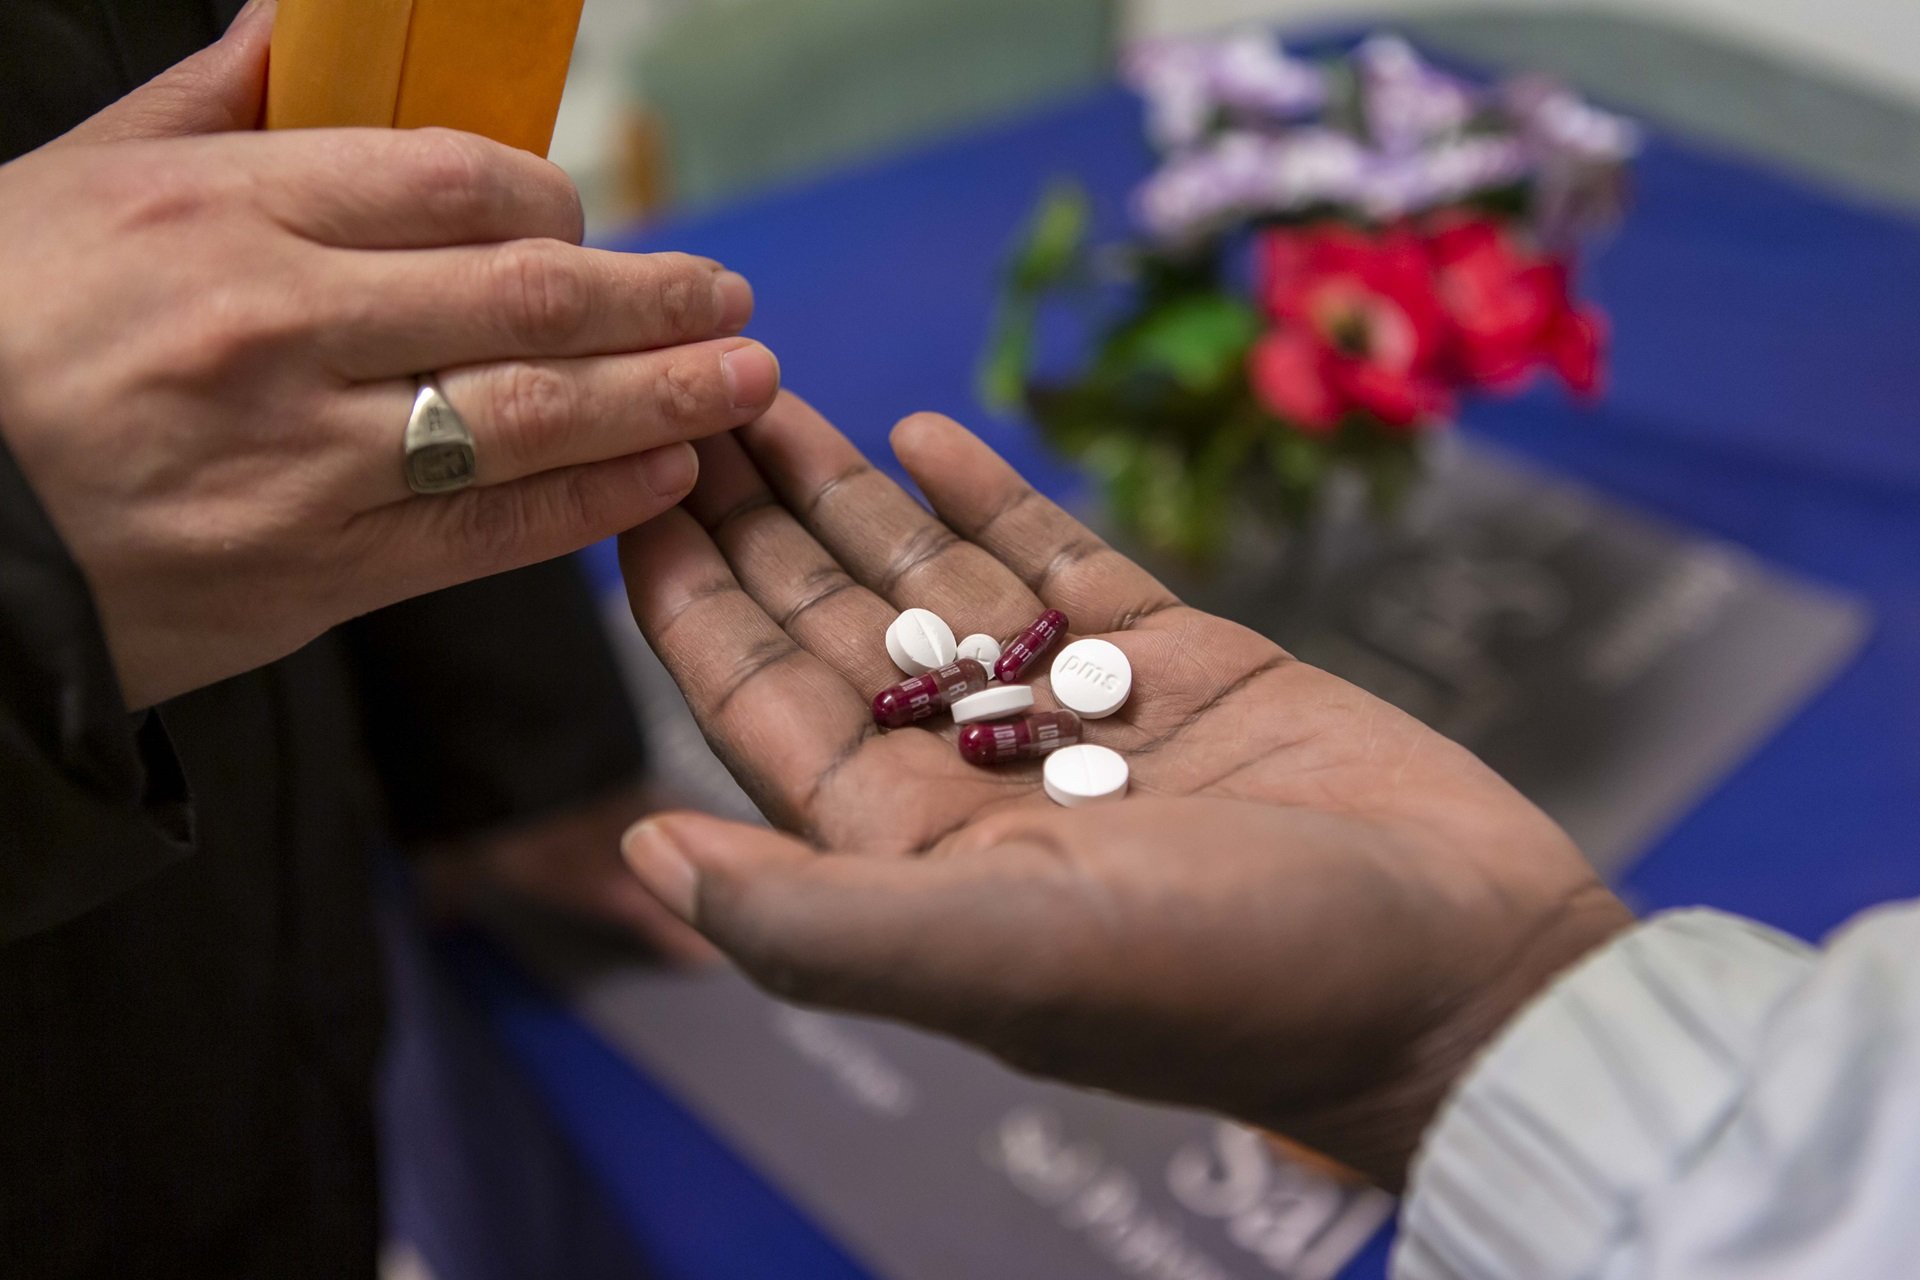 ВОЗ призывает страны принять срочные меры для выполнения задачи «Лекарства без вреда»